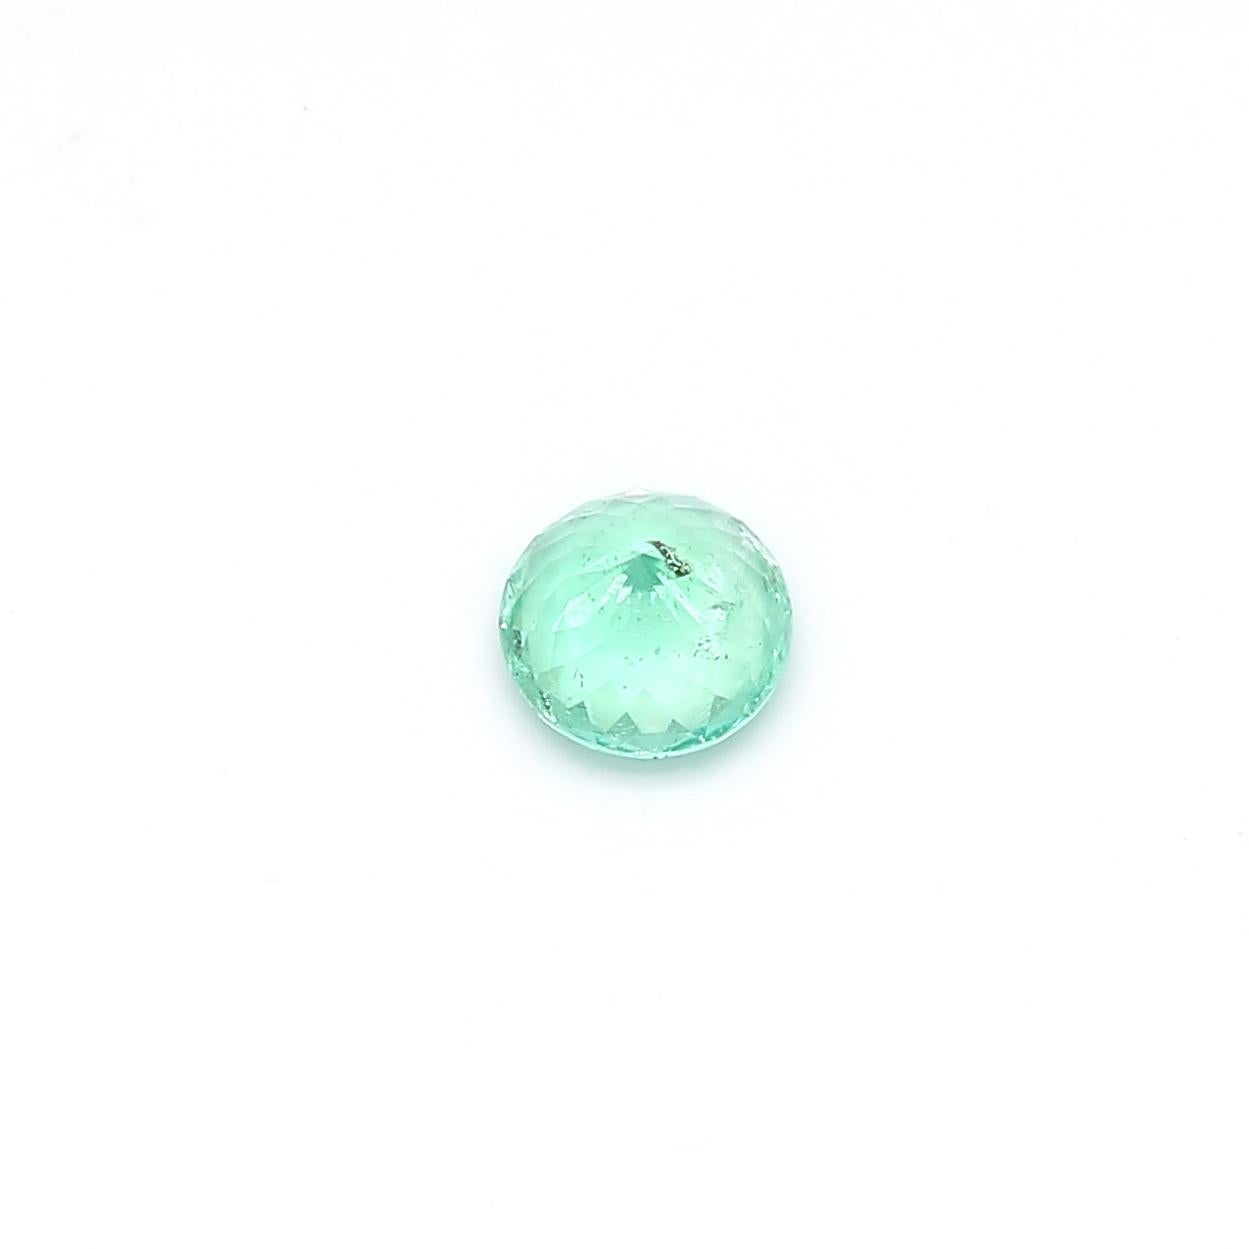 L'émeraude est une variété verte de béryl. Son nom a été dérivé du mot grec ancien pour émeraude, ēmera. L'émeraude de la région russe est très appréciée dans le monde entier en raison de sa clarté et de sa couleur vert fluo. En raison de sa couleur